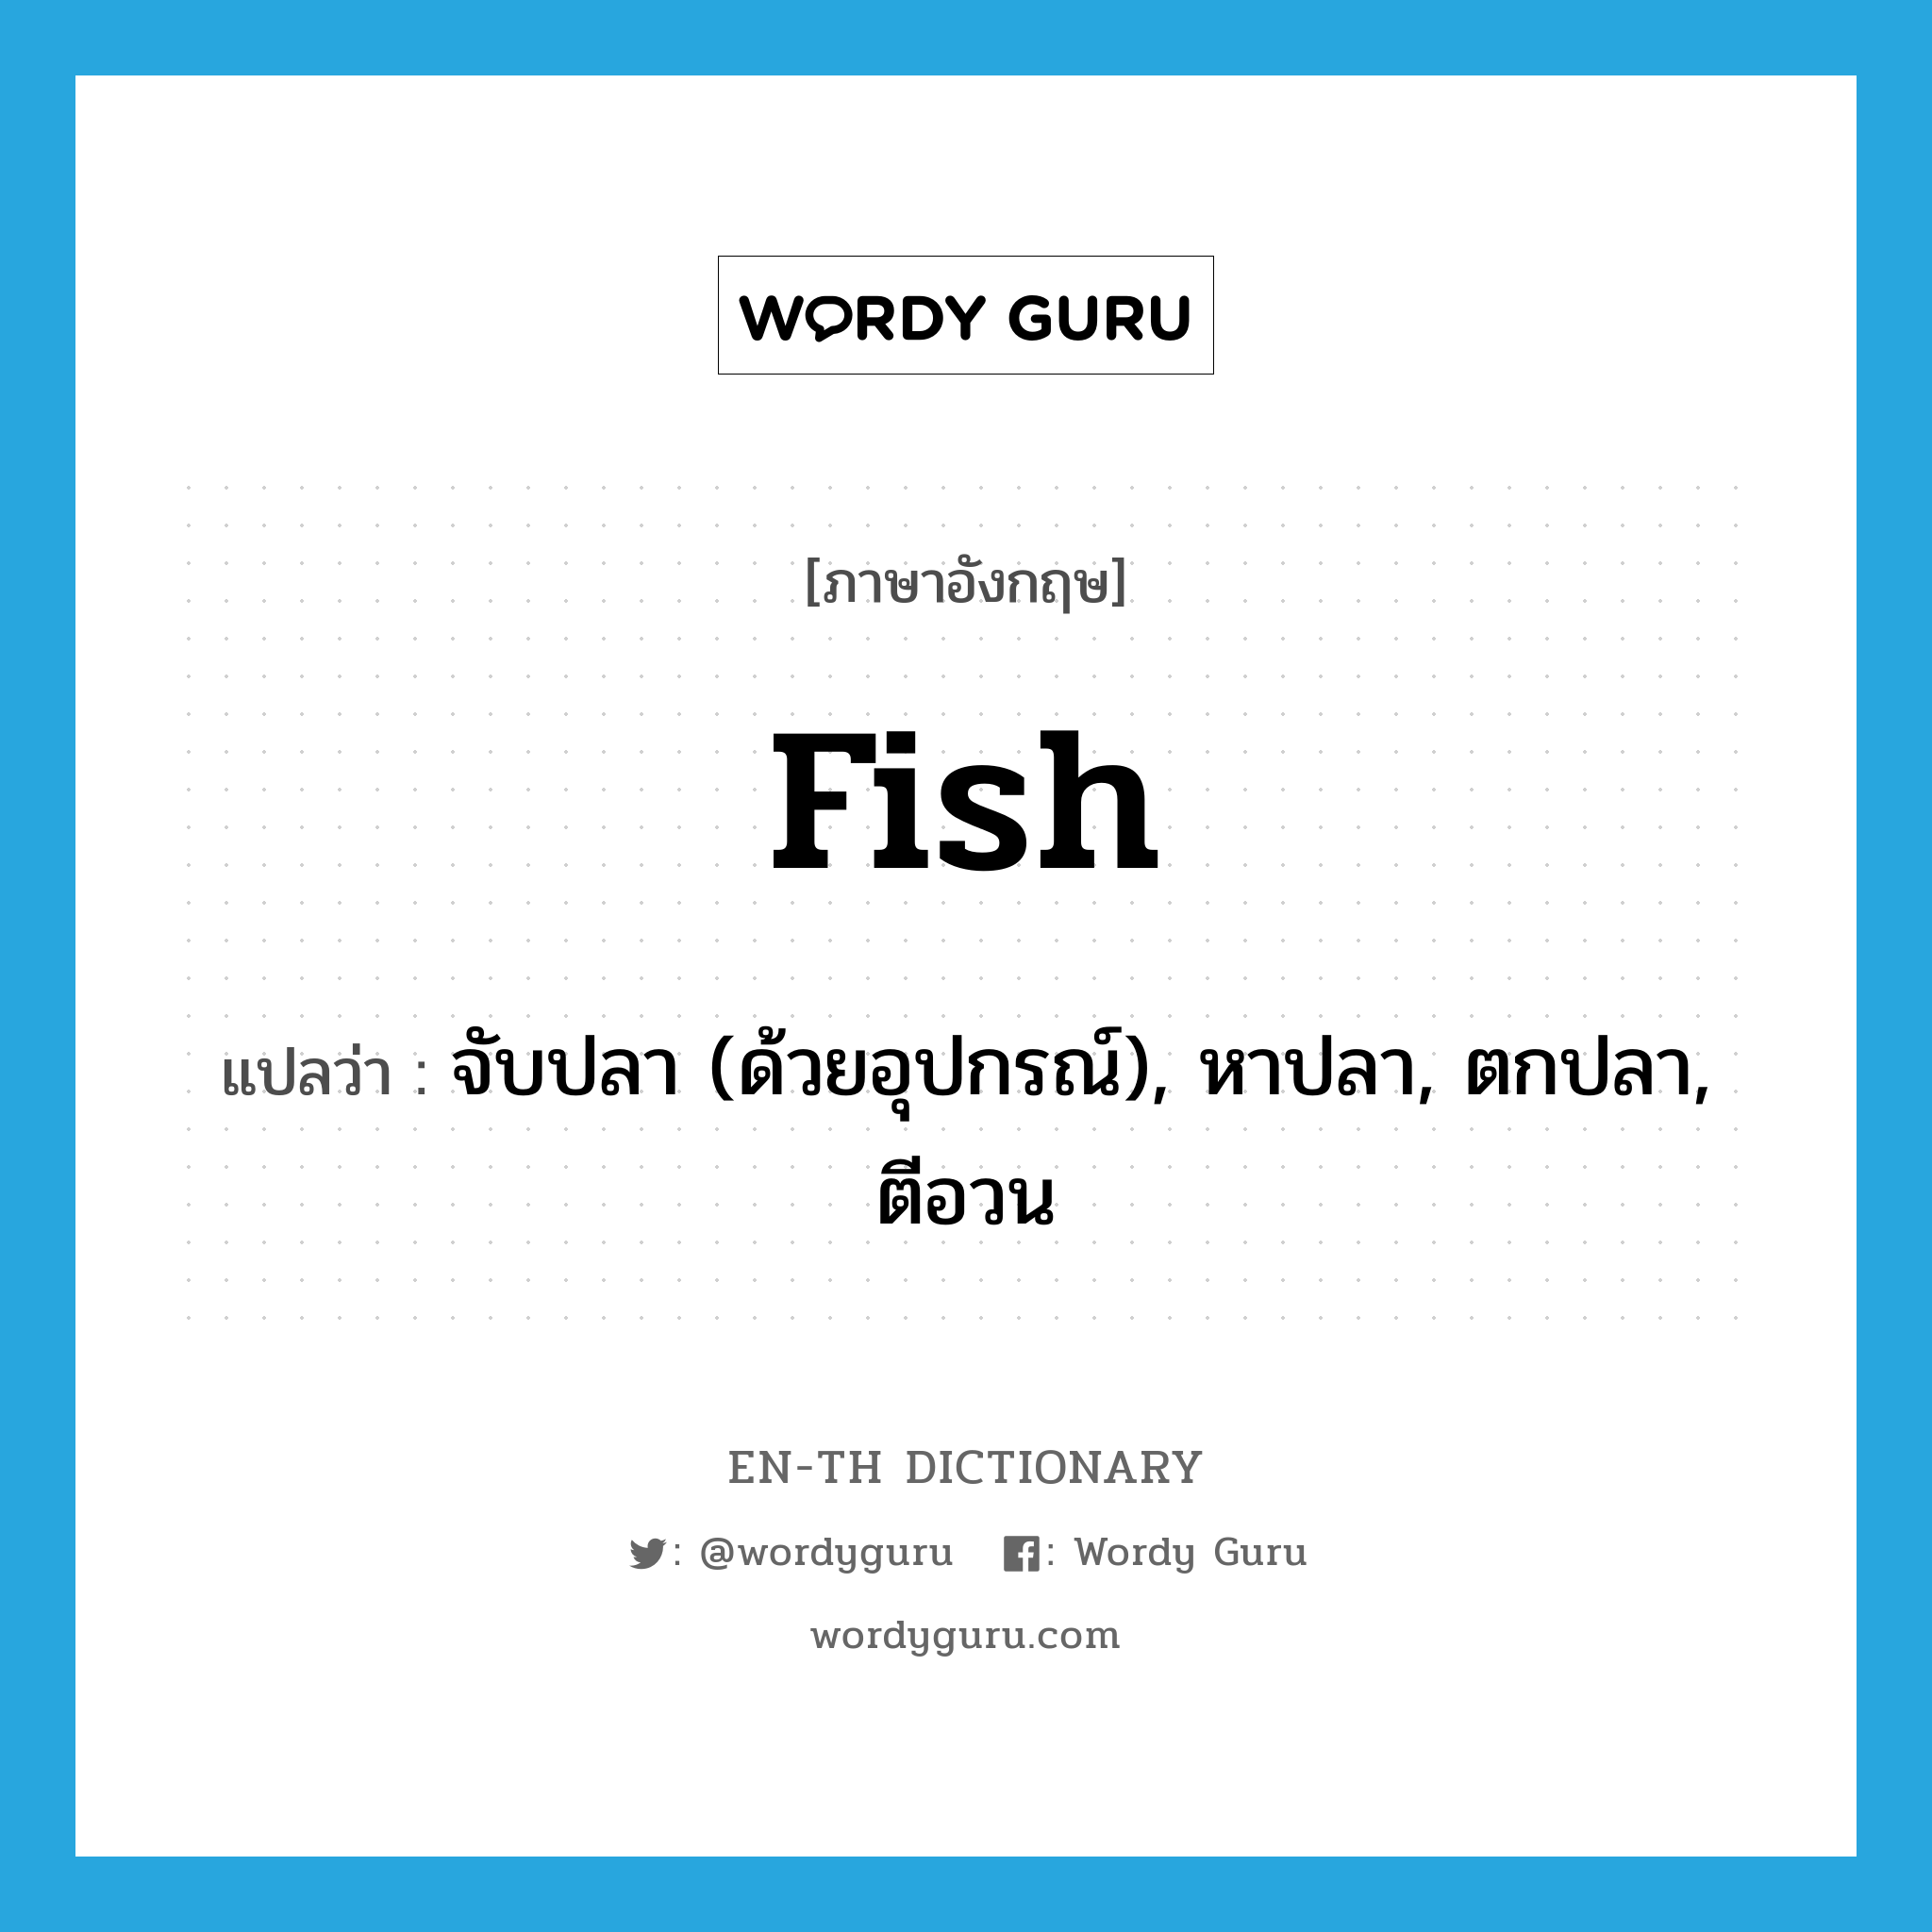 จับปลา (ด้วยอุปกรณ์), หาปลา, ตกปลา, ตีอวน ภาษาอังกฤษ?, คำศัพท์ภาษาอังกฤษ จับปลา (ด้วยอุปกรณ์), หาปลา, ตกปลา, ตีอวน แปลว่า fish ประเภท VI หมวด VI